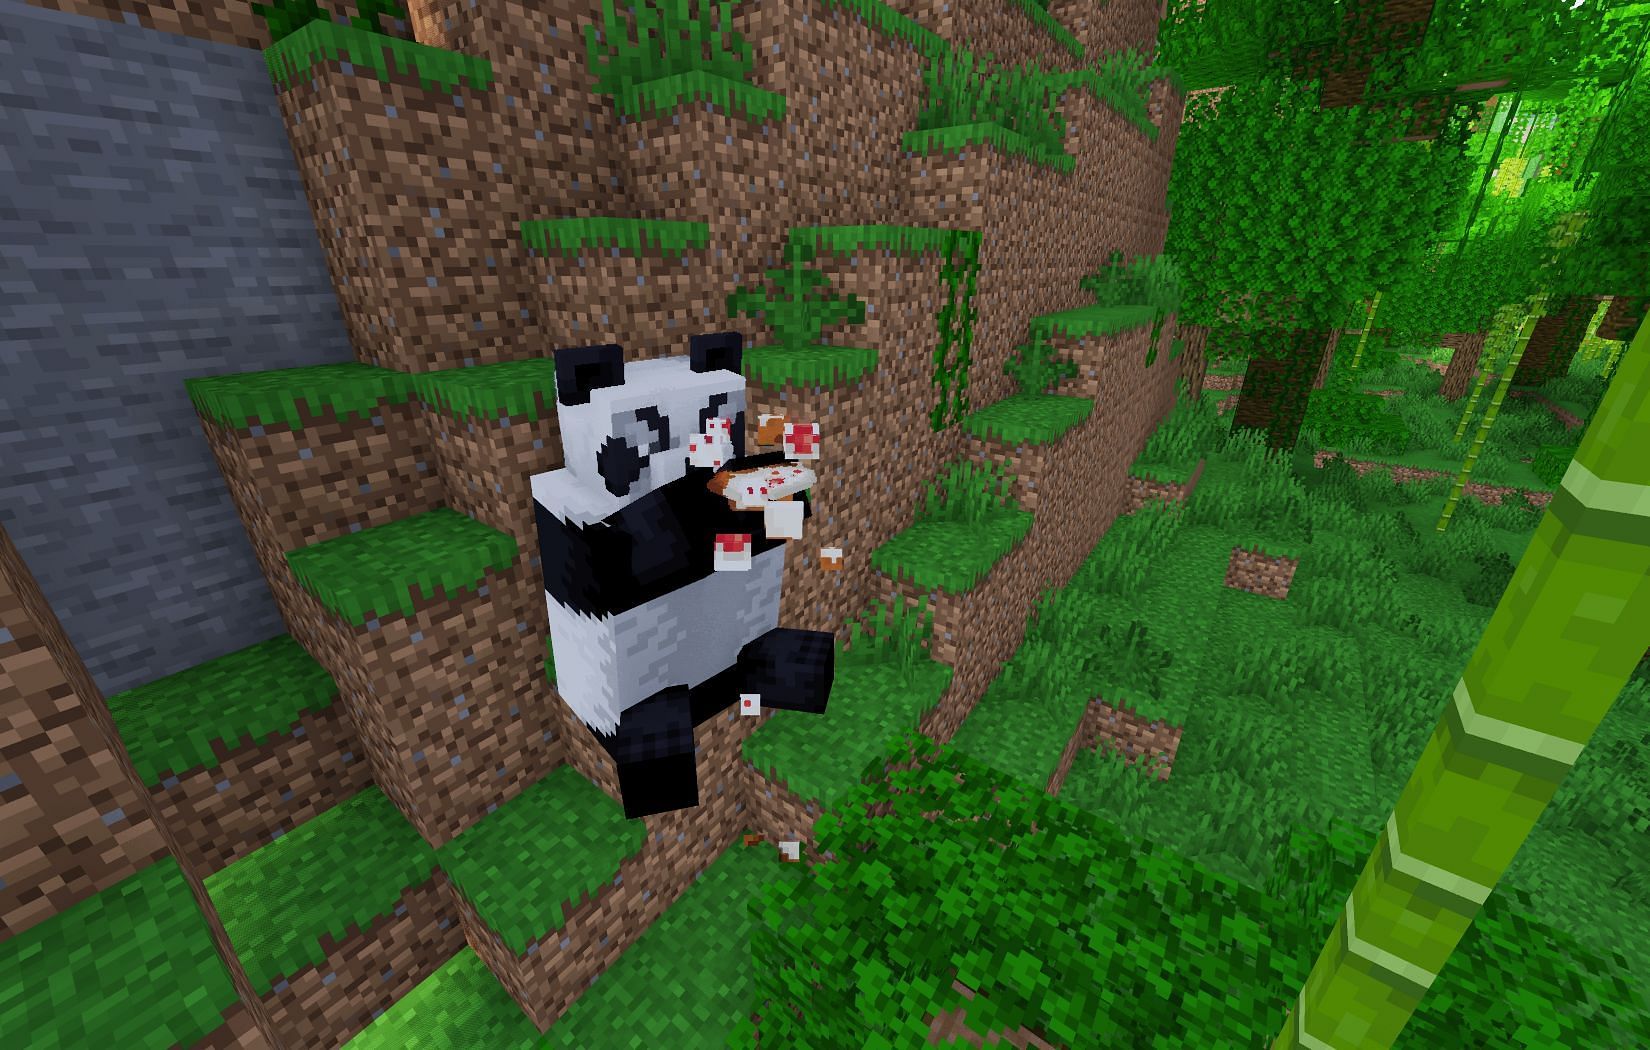 Pandas eating cake (Image via Mojang)